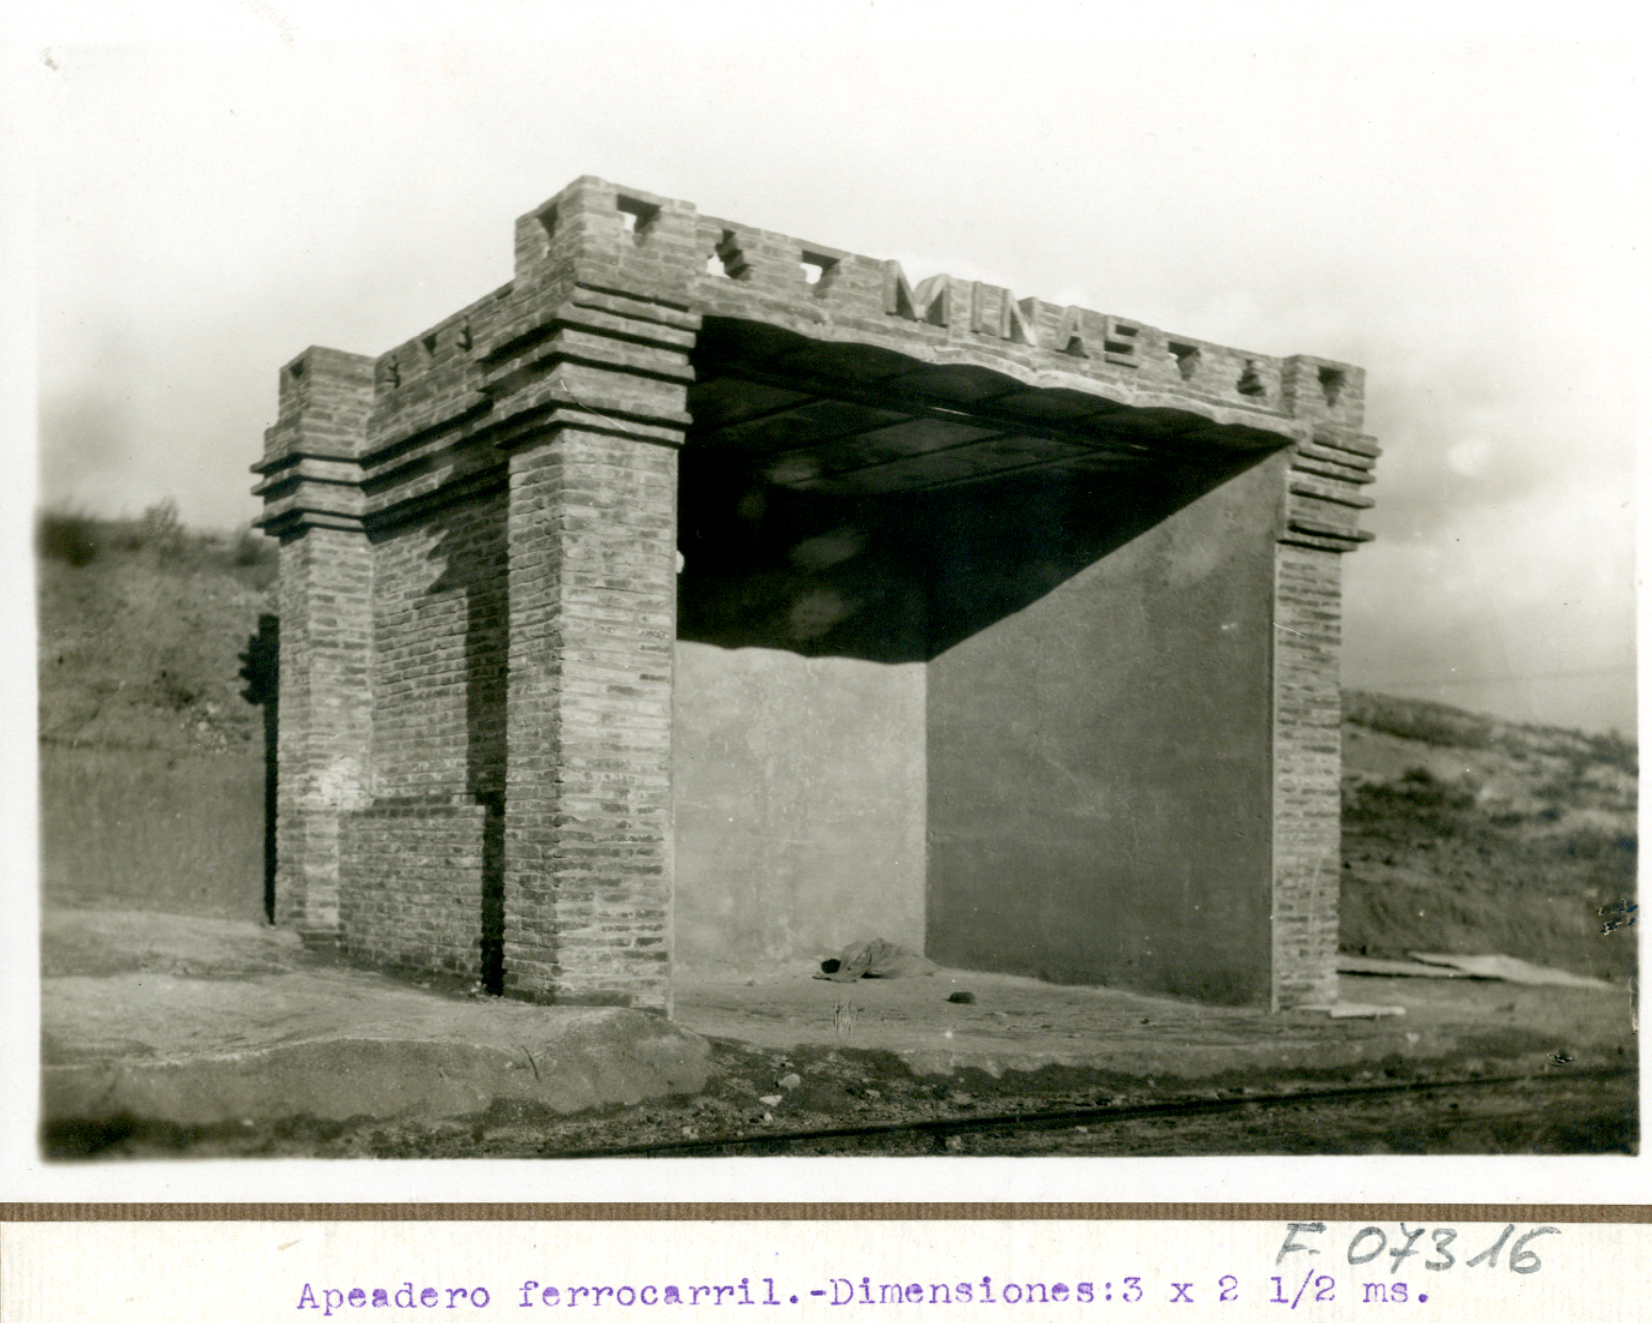 Aoeadero de ferrocarril. Demostración experimental por el cuerpo de ingenieros con la presencia de Alfonso XIII. 1922-1923, Madrid